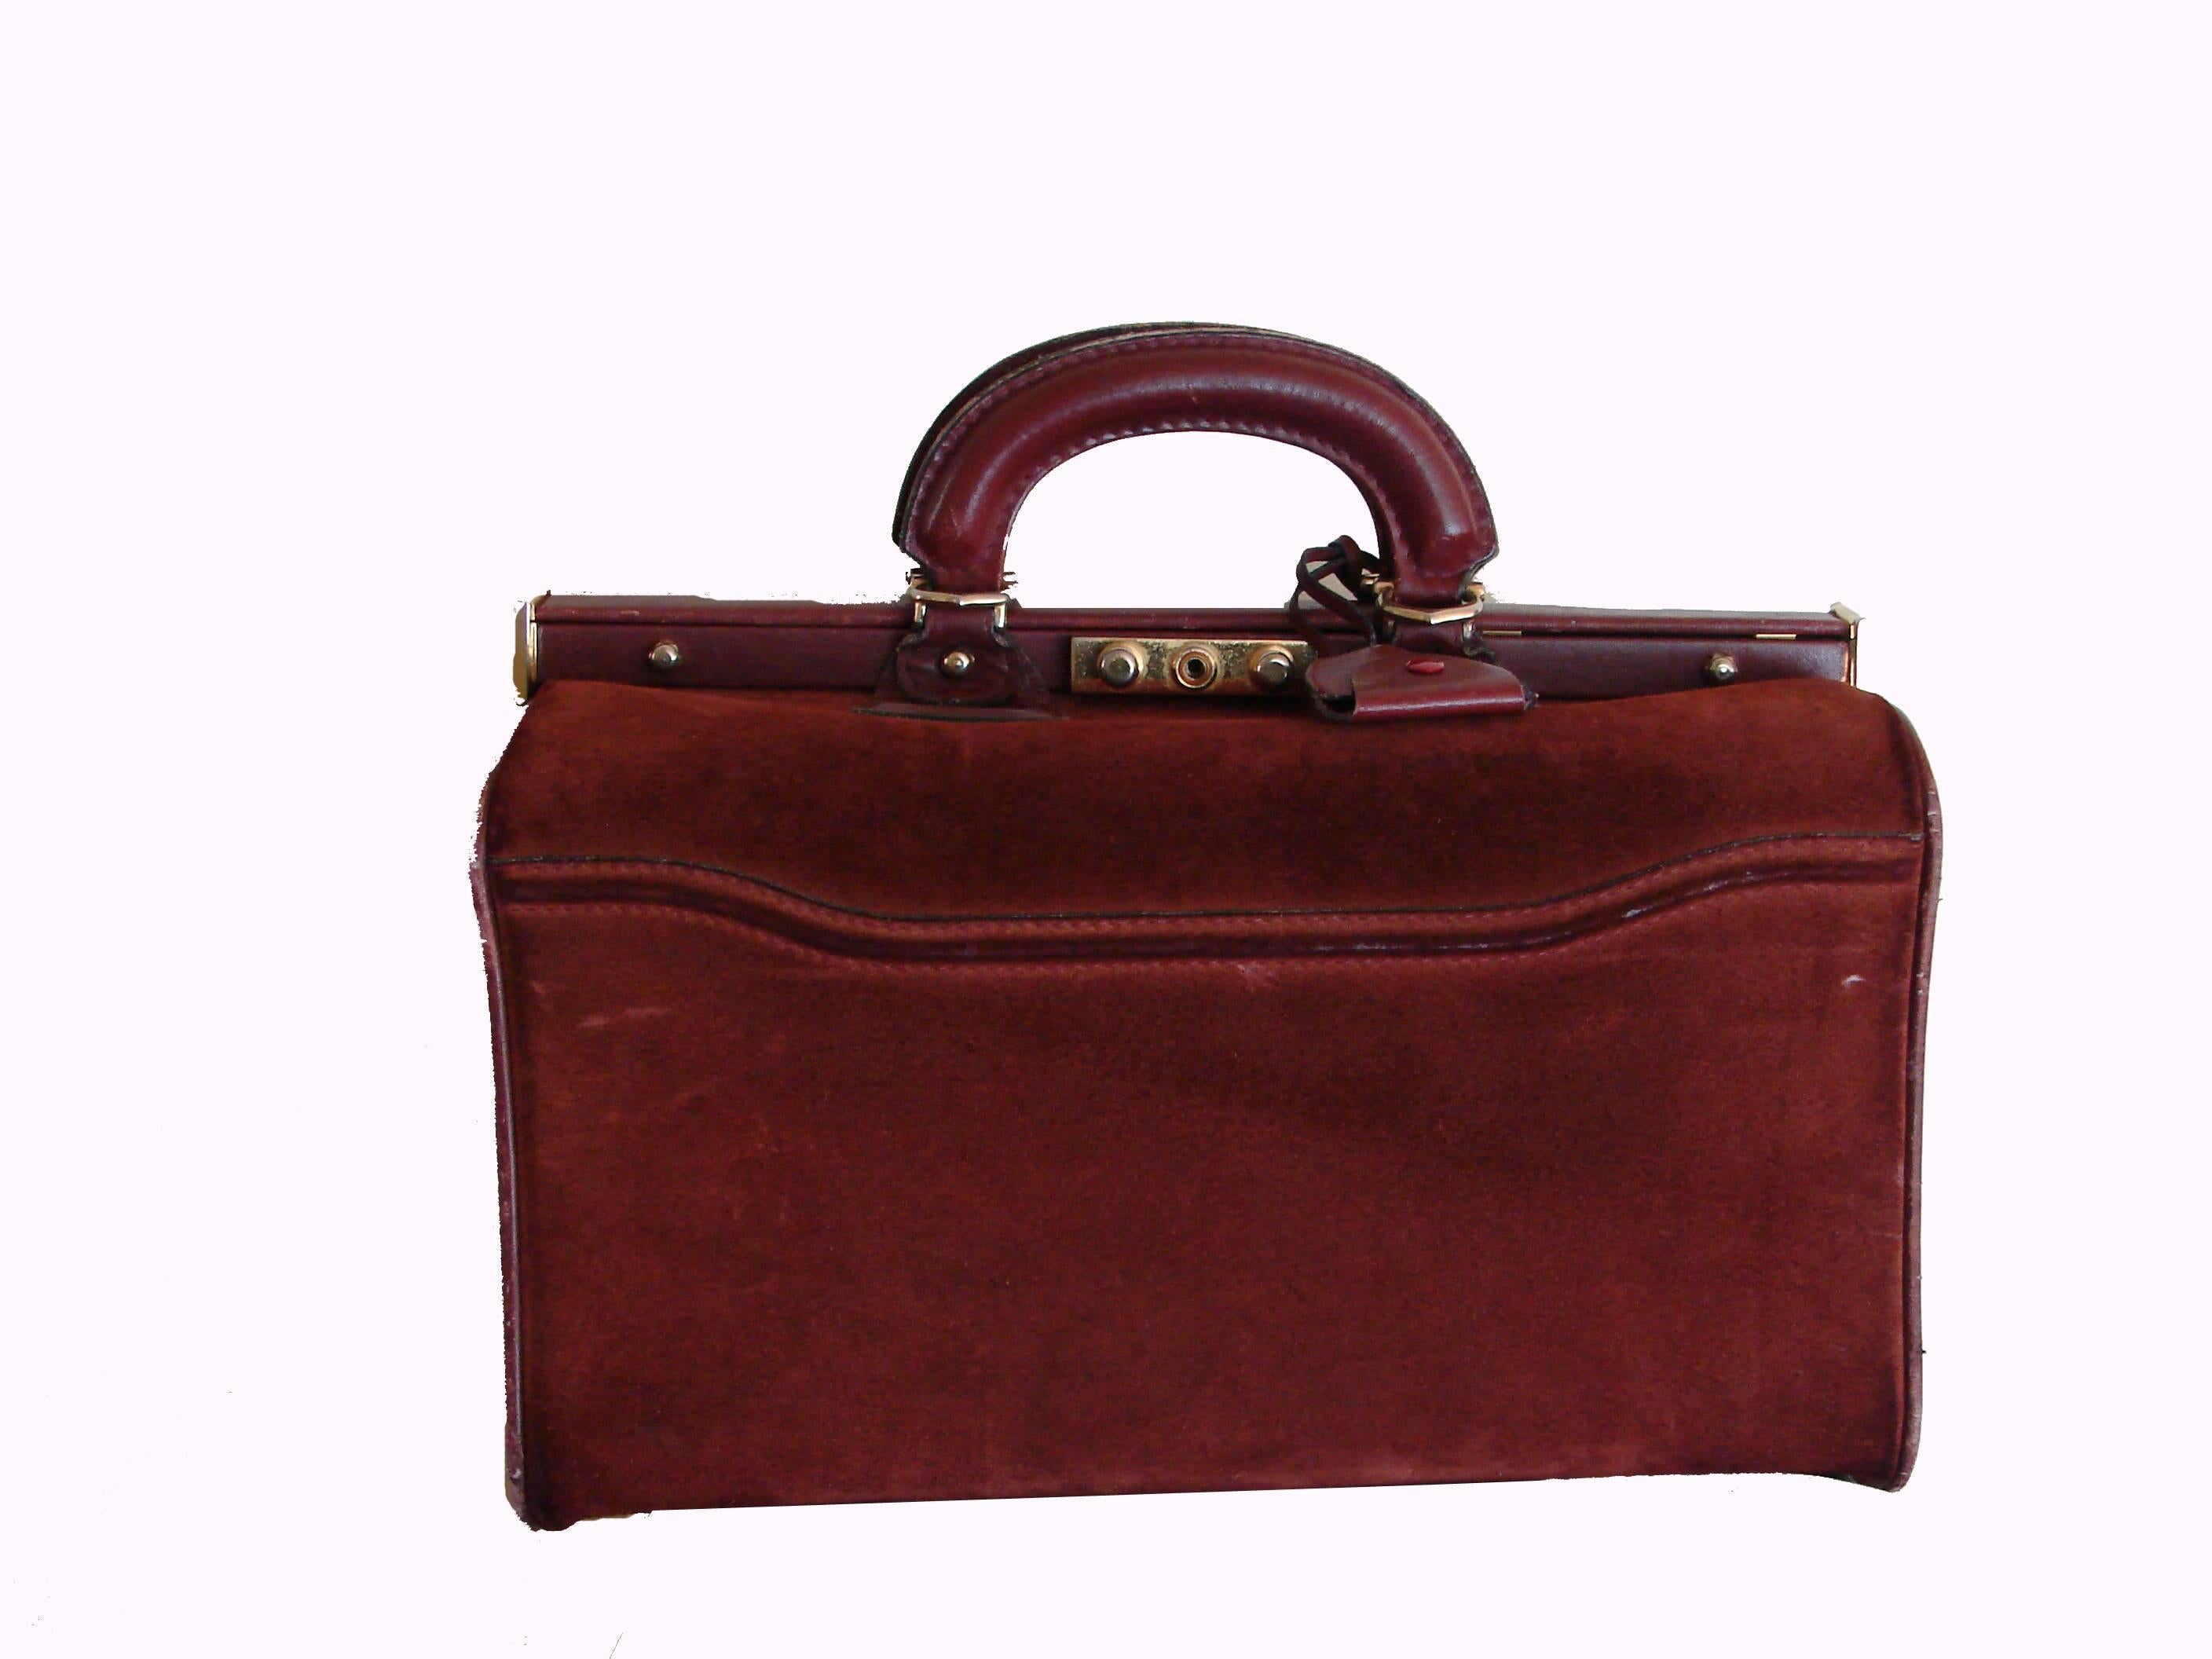 Women's or Men's Cartier Large Bordeaux Suede Leather Doctors Bag Train Case 1980s with Dust Bag